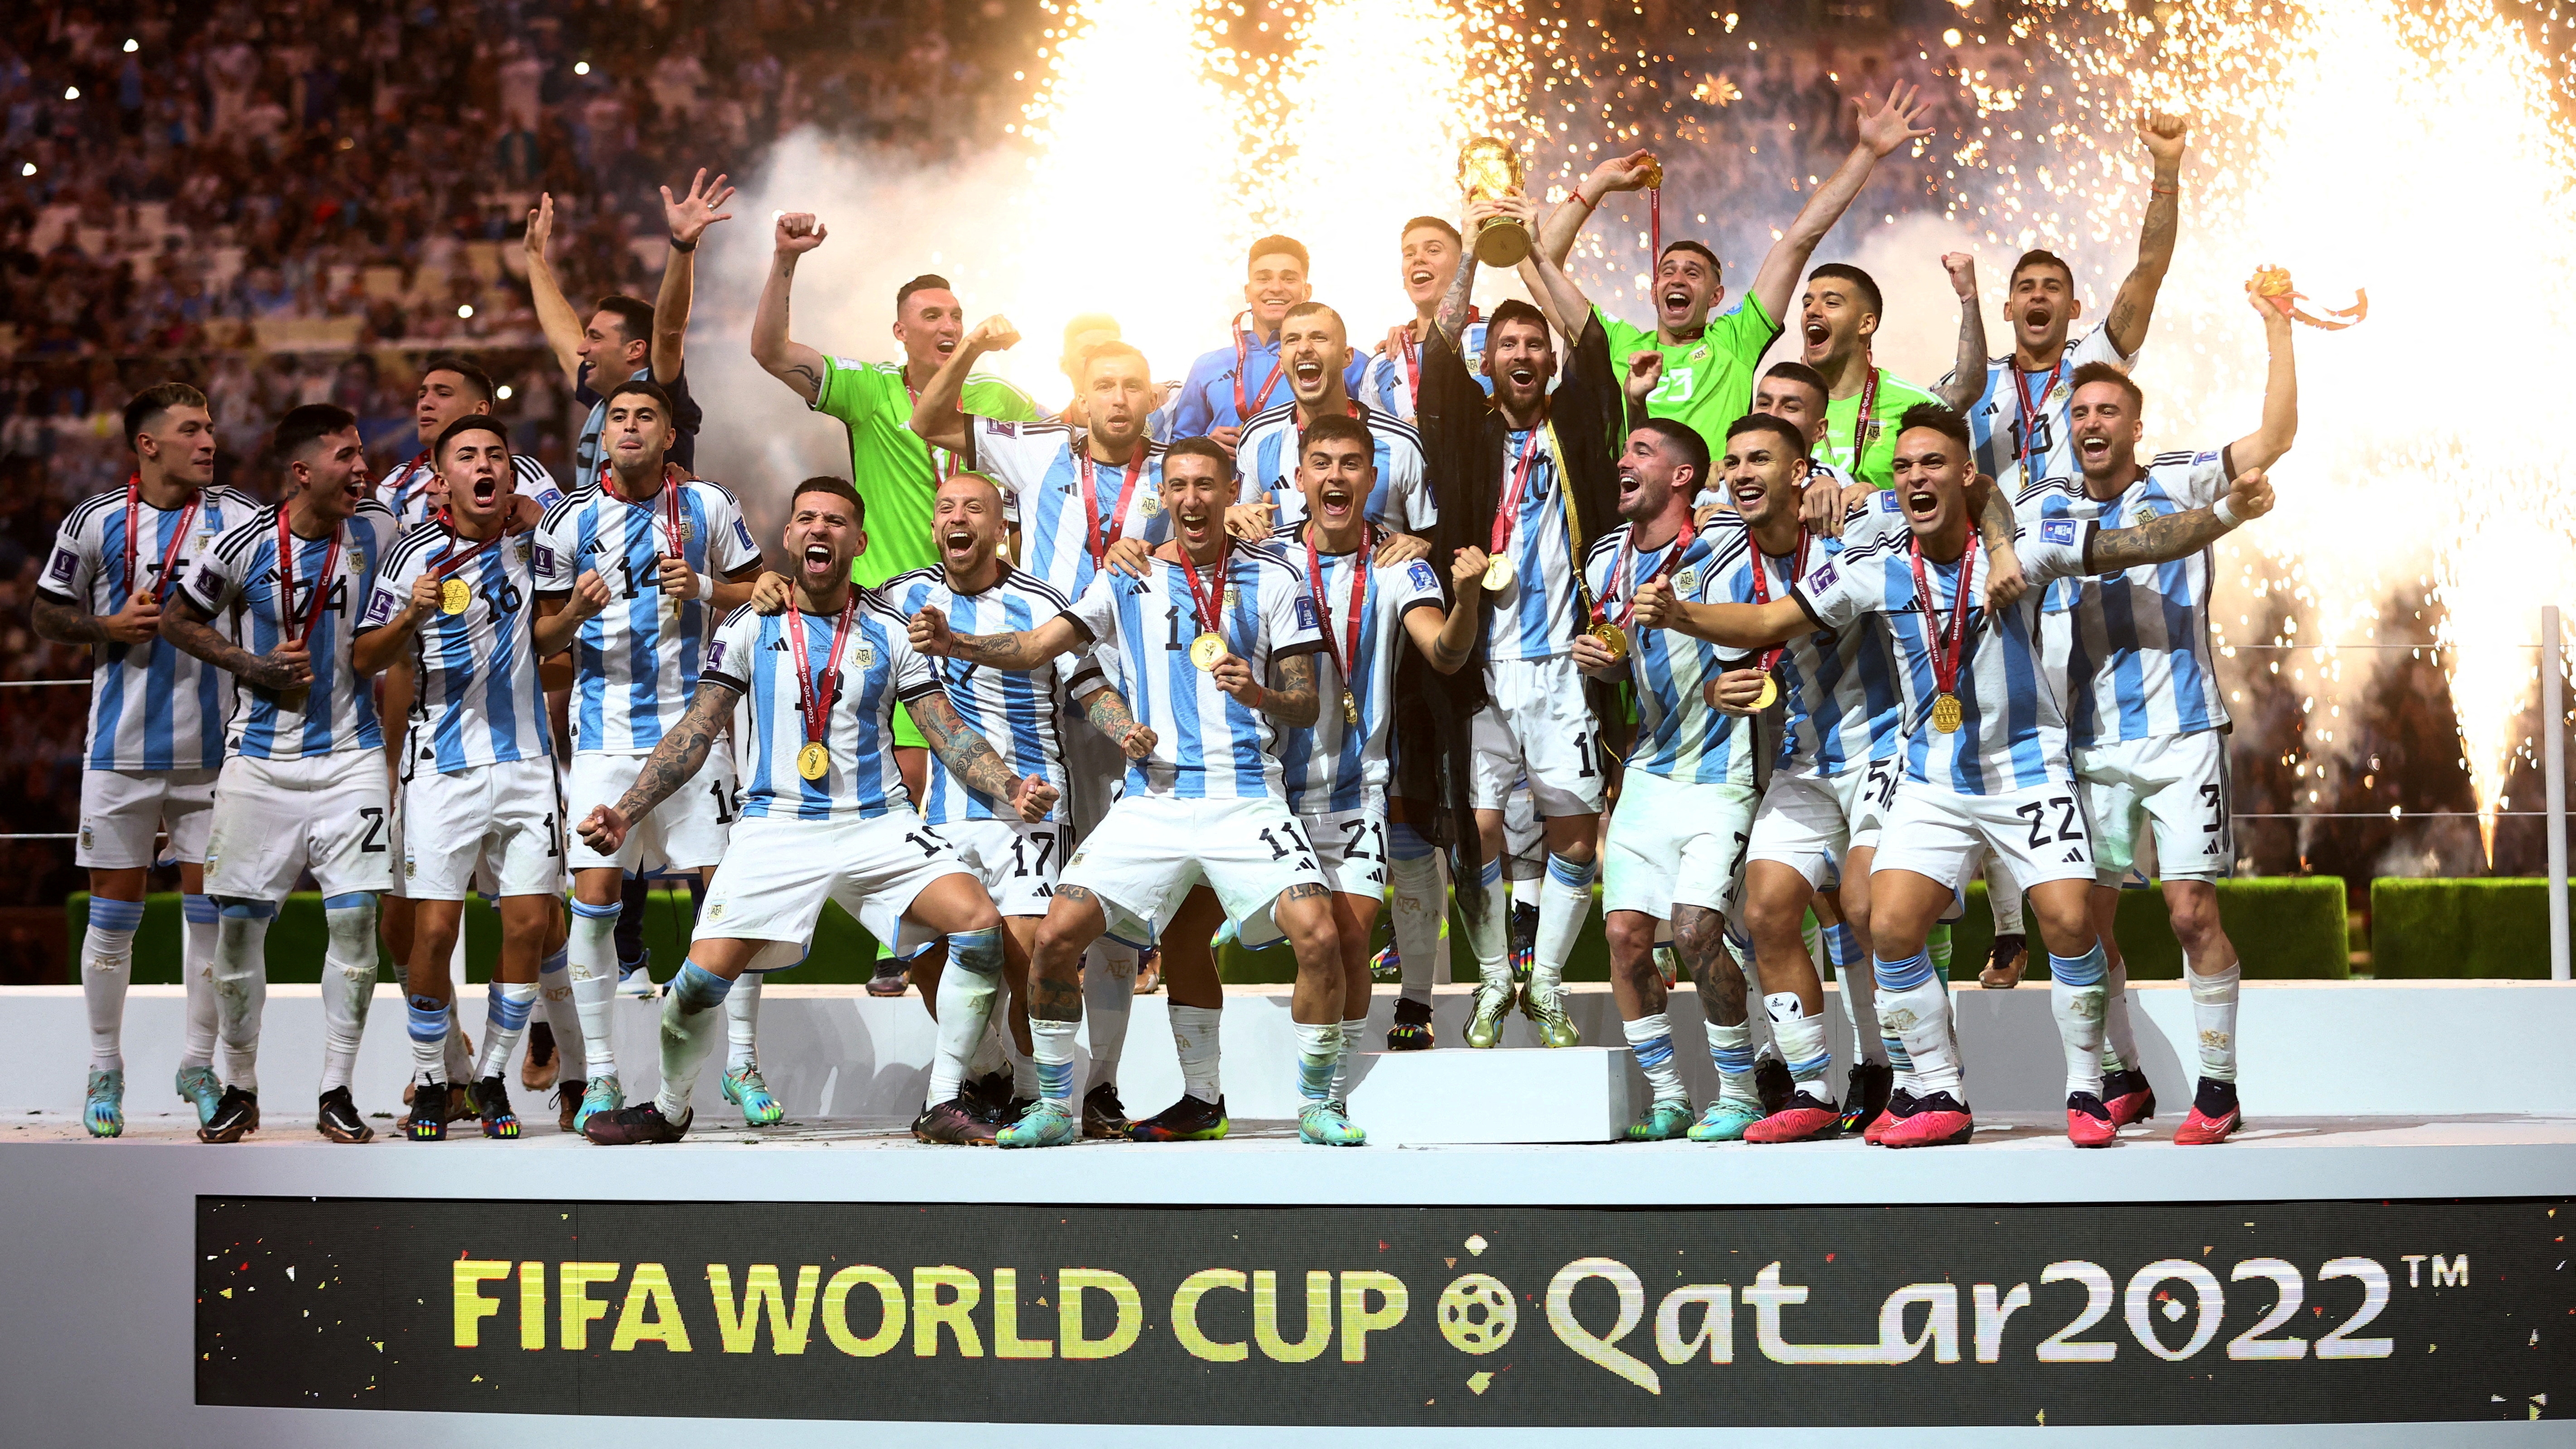 Los campeones volverán a jugar un partido en la Argentina después de haber conquistado el Mundial de Qatar (Reuters)
